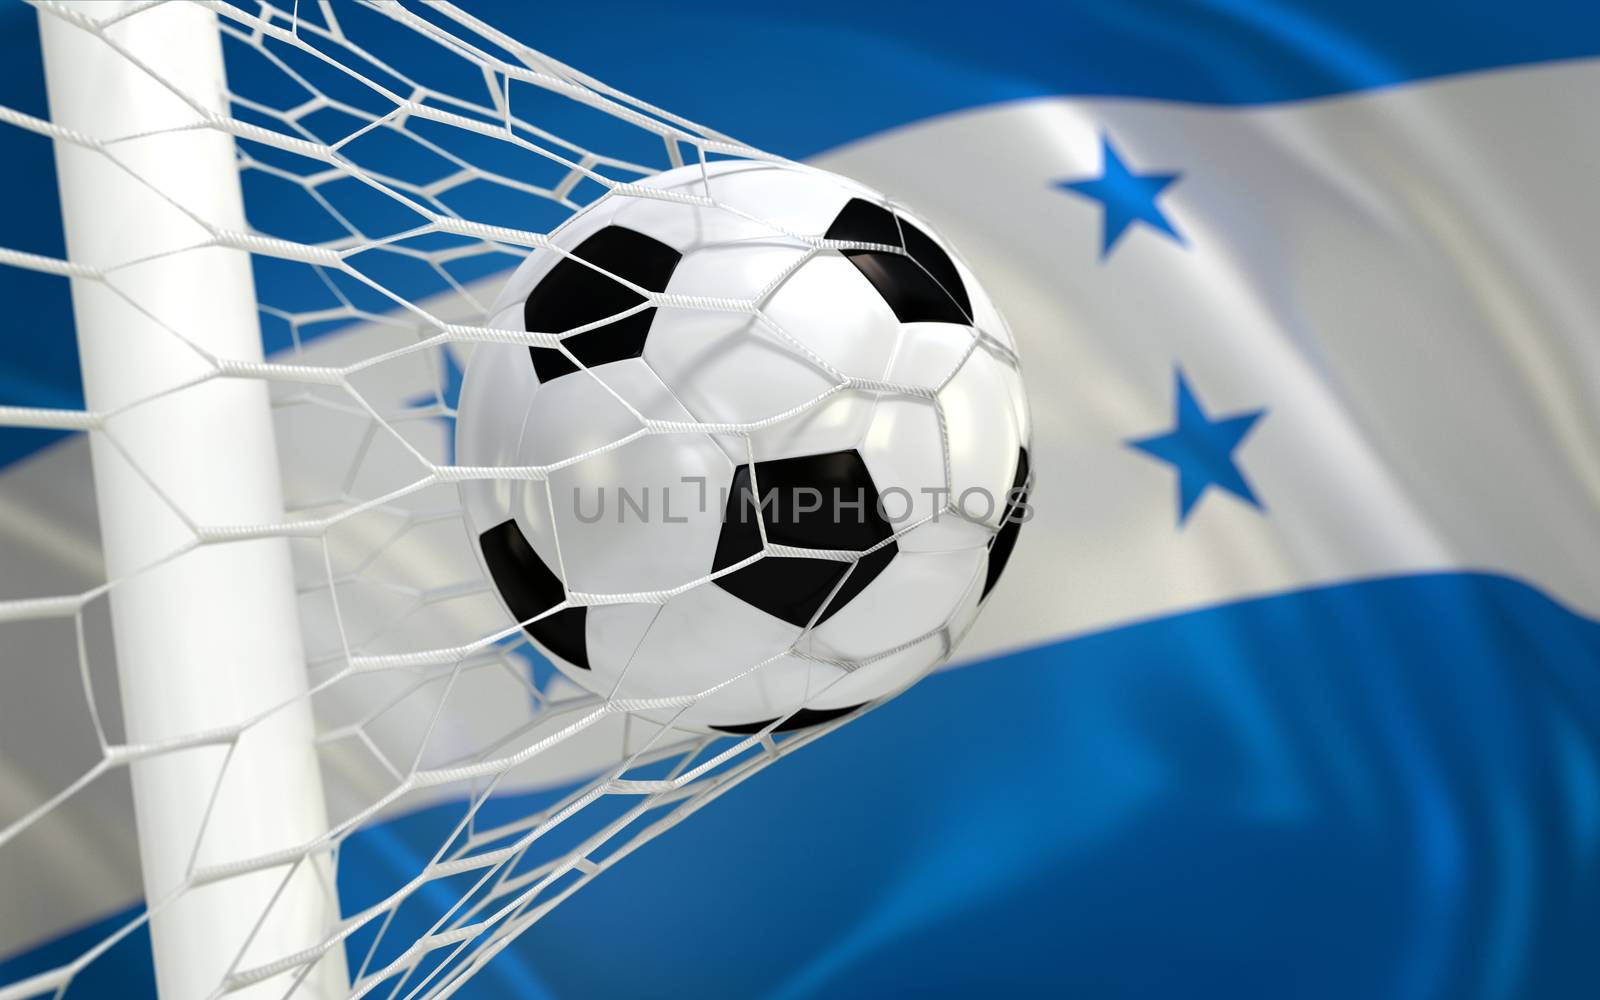 Honduras waving flag and soccer ball in goal net by Barbraford